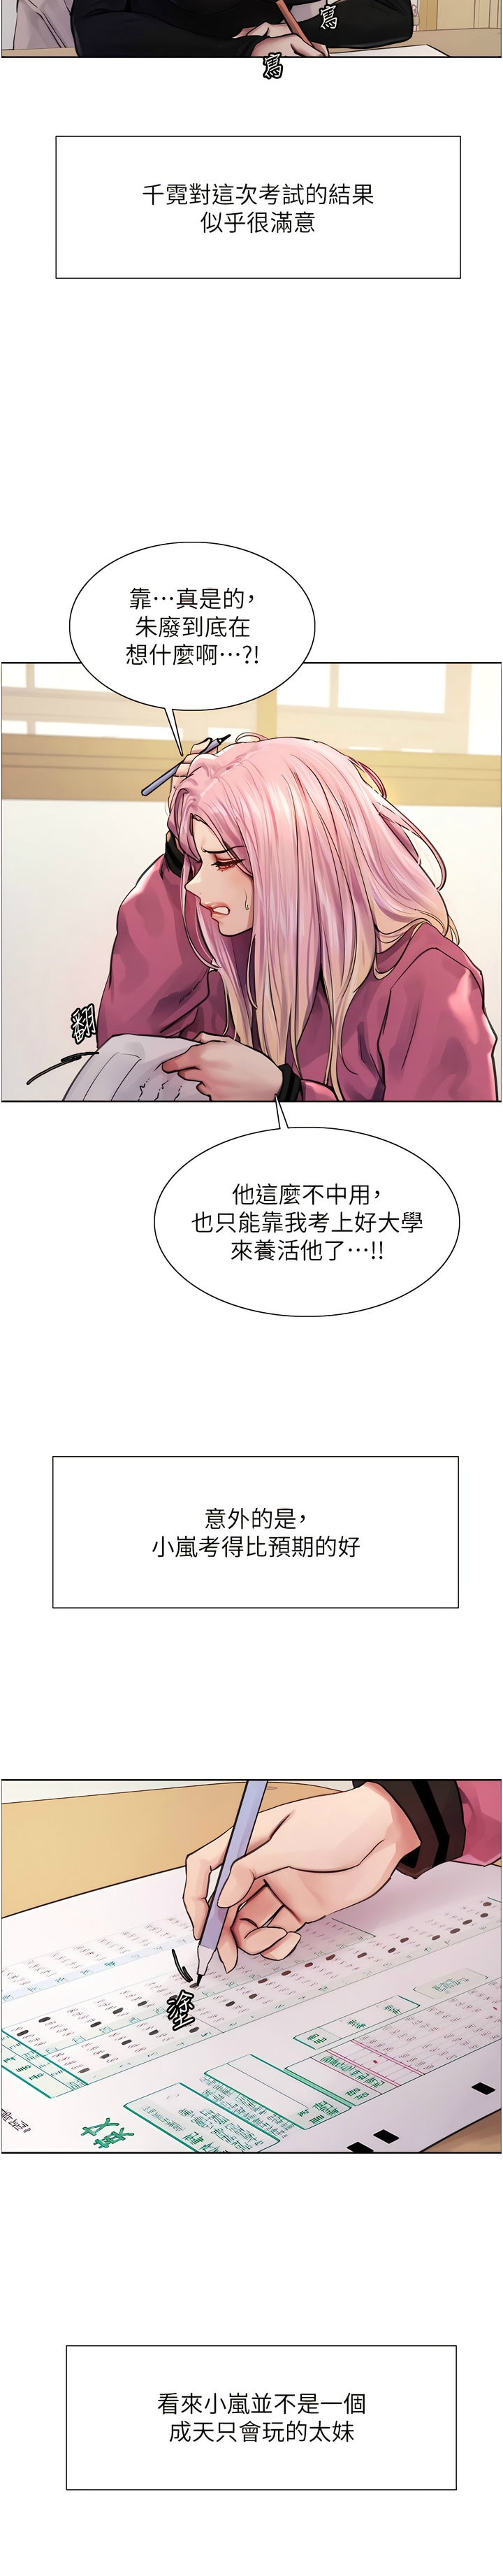 [韩漫]  色轮眼/ Sex Stopwatch 1-10 (第二季)[中文][连载中] - Page 9